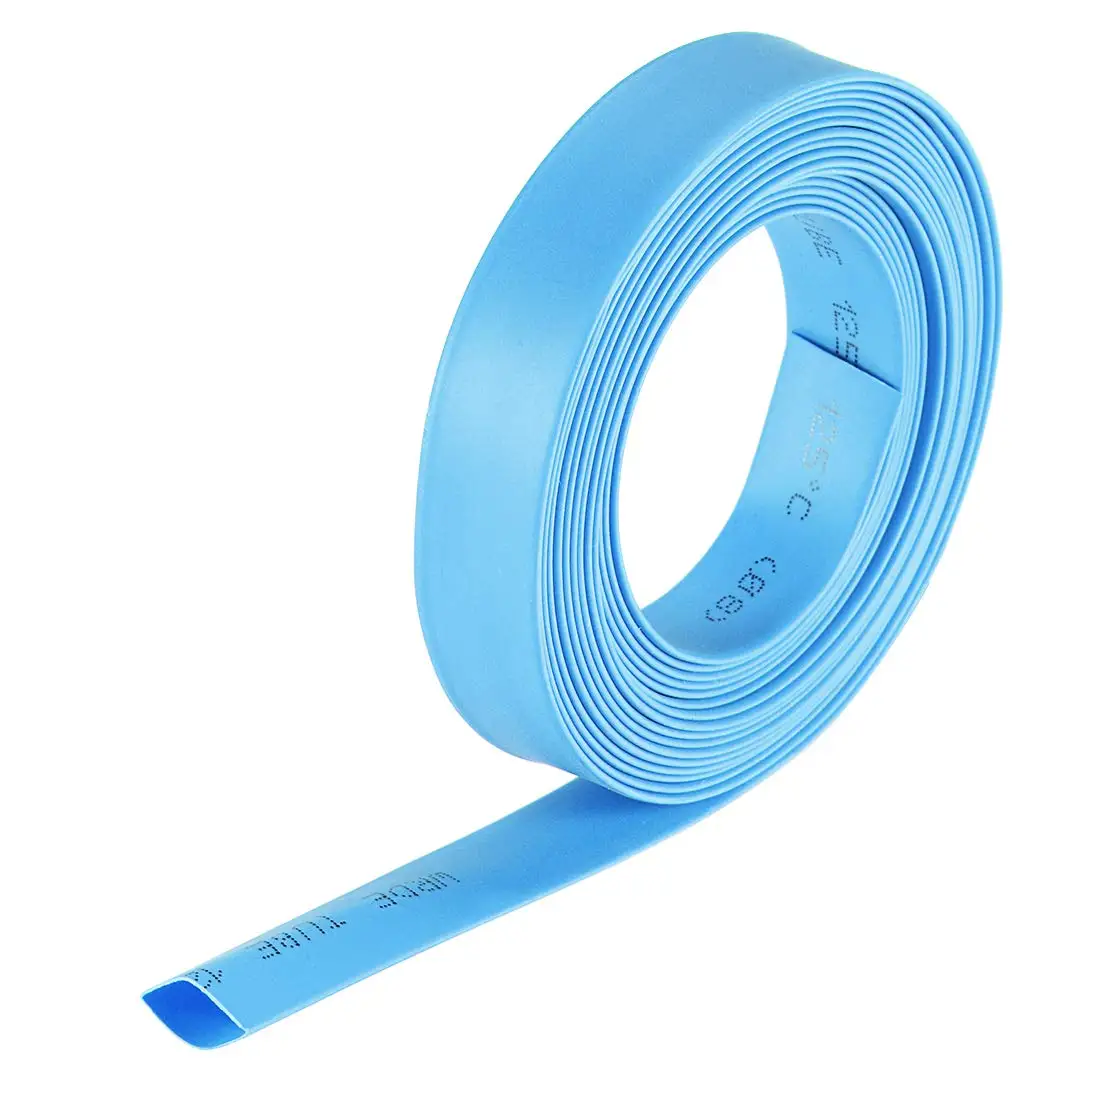 

Термоусадочные трубки Keszoox, плоские трубки 5/16 дюйма (8 мм) диаметром 13,7 мм с коэффициентом усадки 2:1, 10 футов, синие